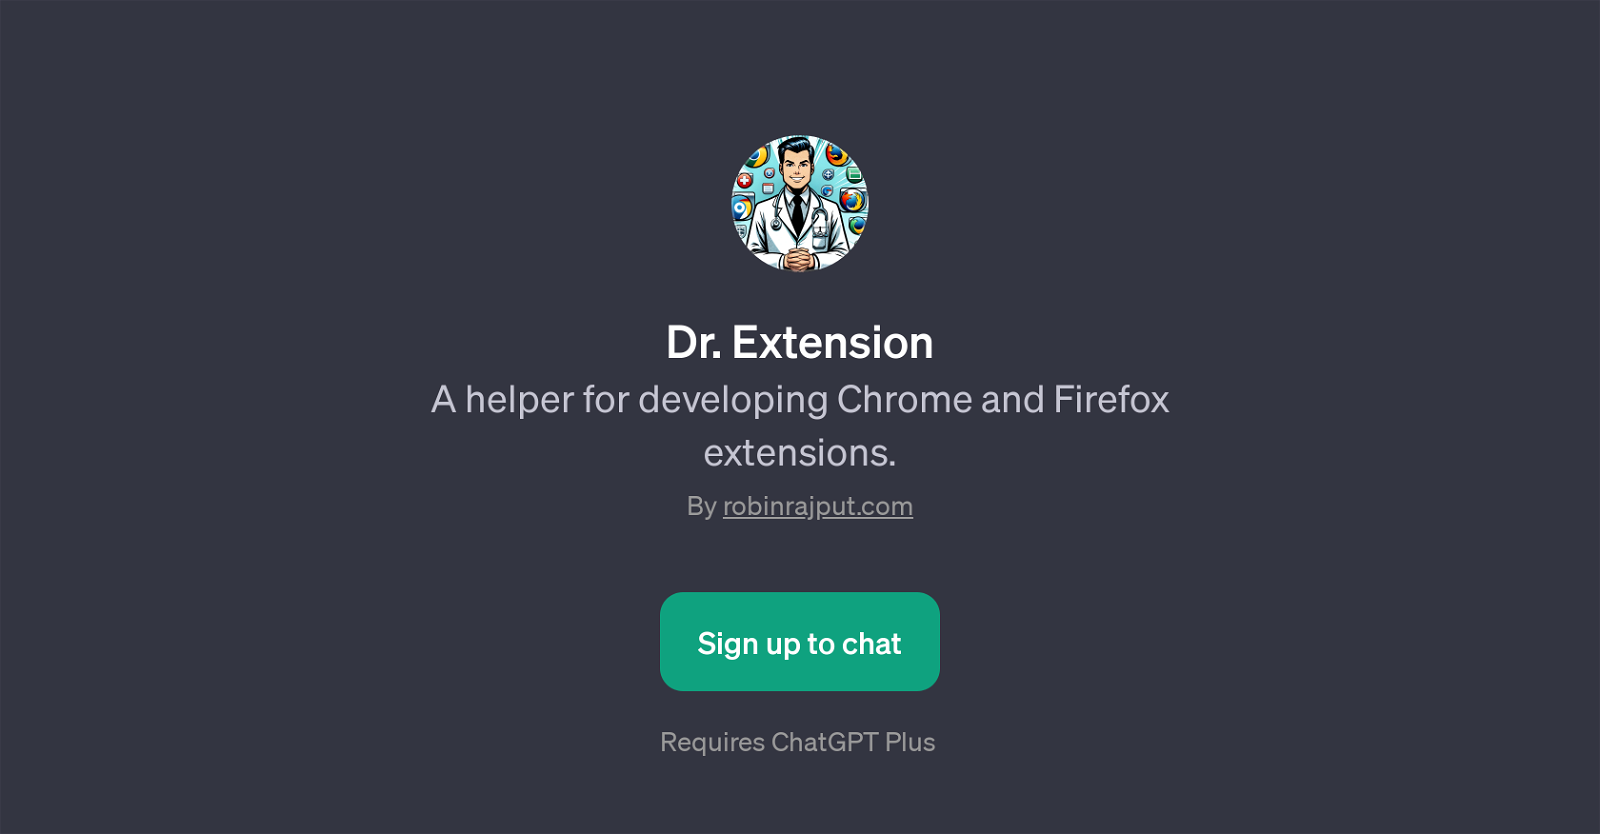 Dr. Extension website